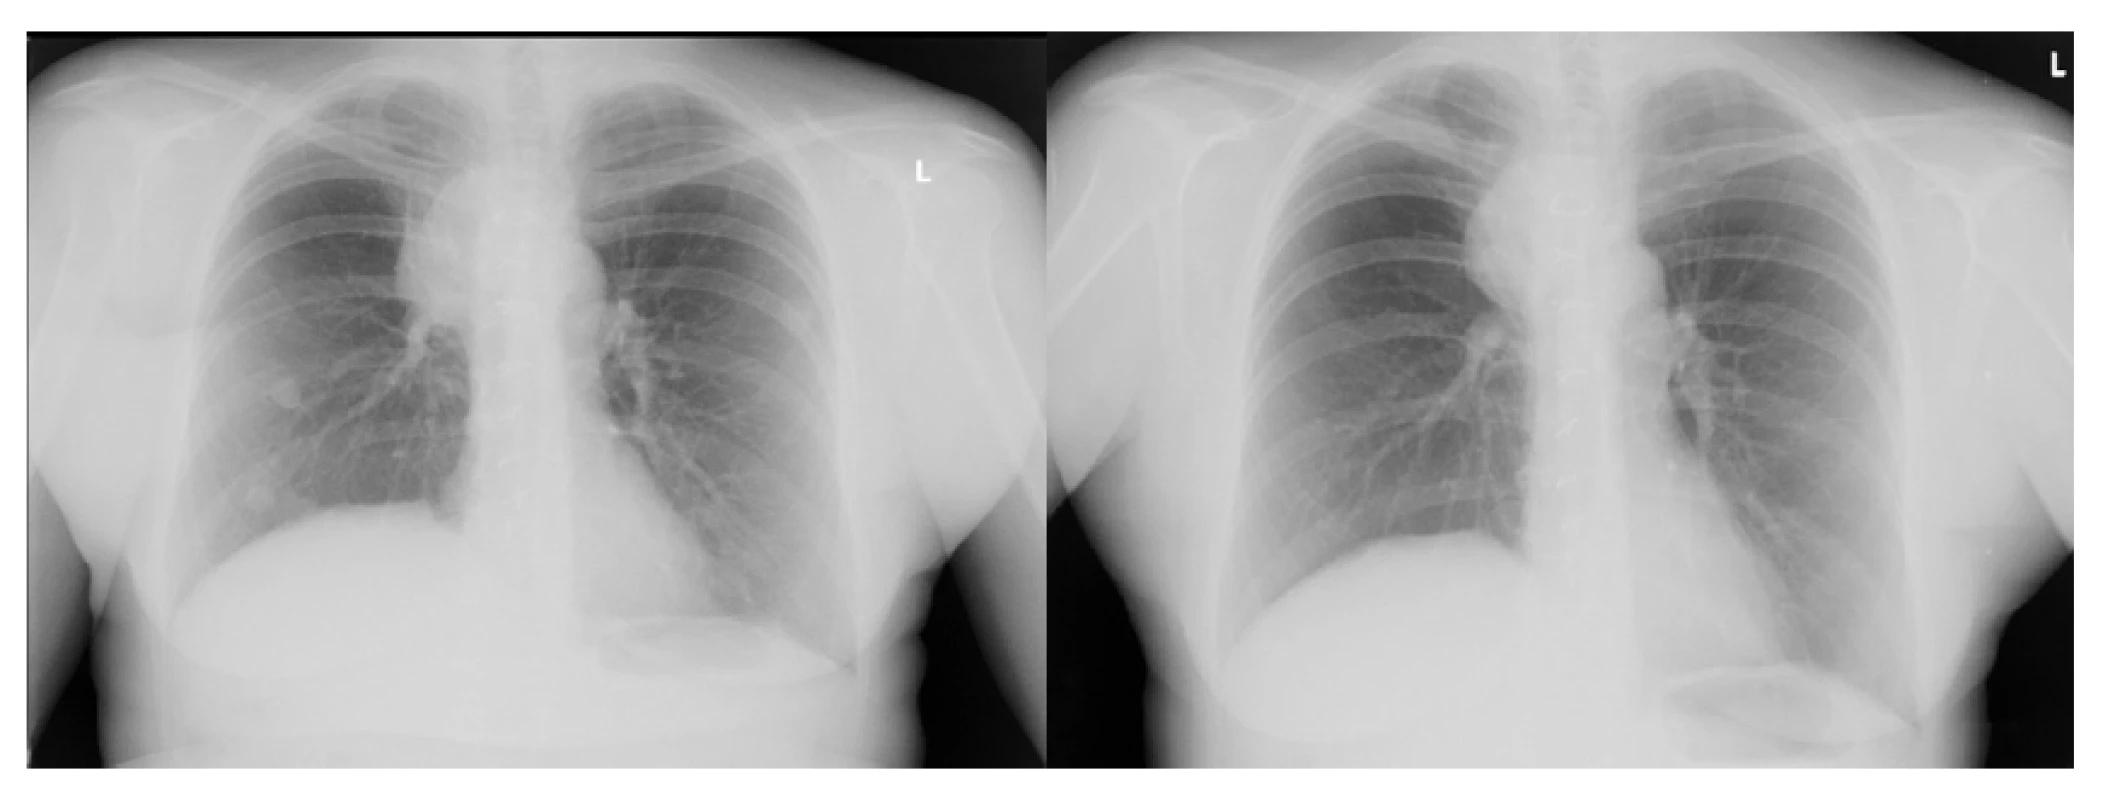 Skiagram hrudníku před zahájením léčby nivolumabem
a po dvou měsících léčby – regrese plicních metastáz vpravo
a zmenšení nádorové masy vpravo paratracheálně